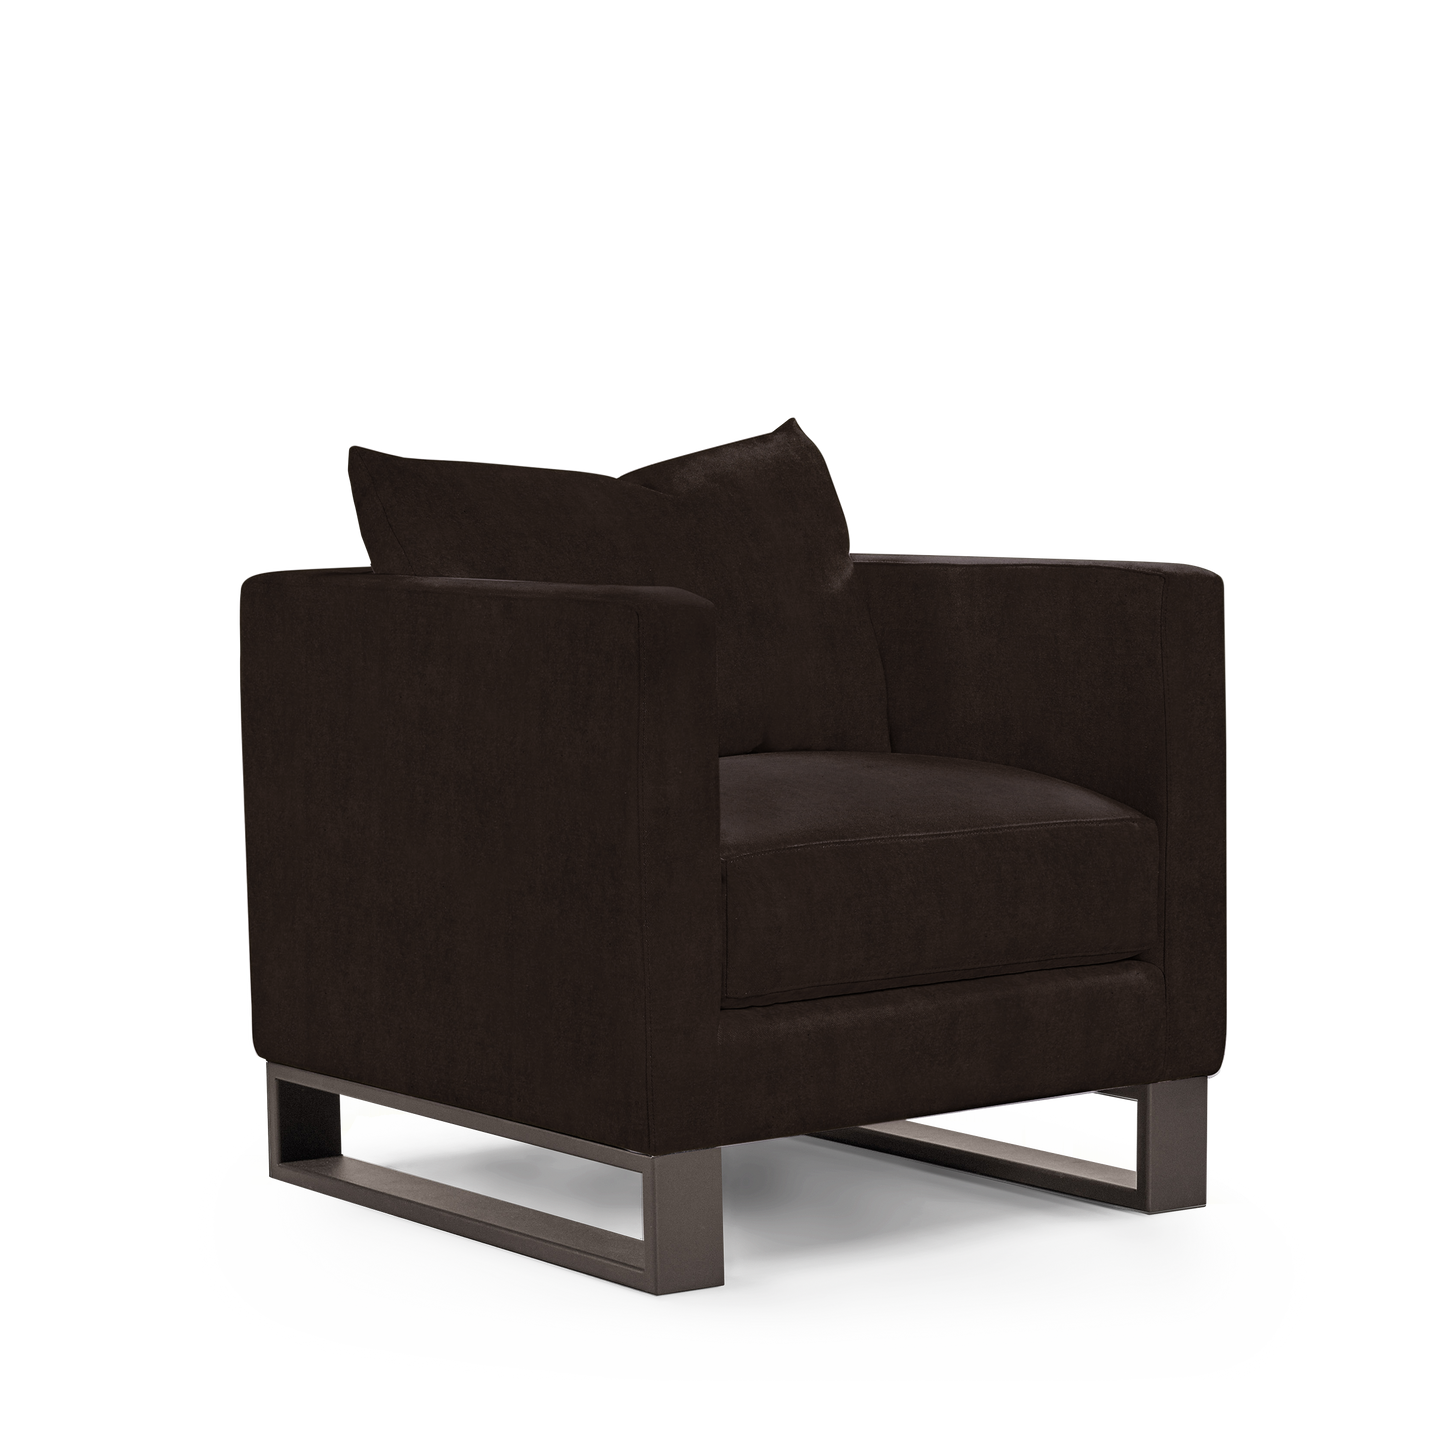 Atlin armchair with London dark brown textile with moka legs  